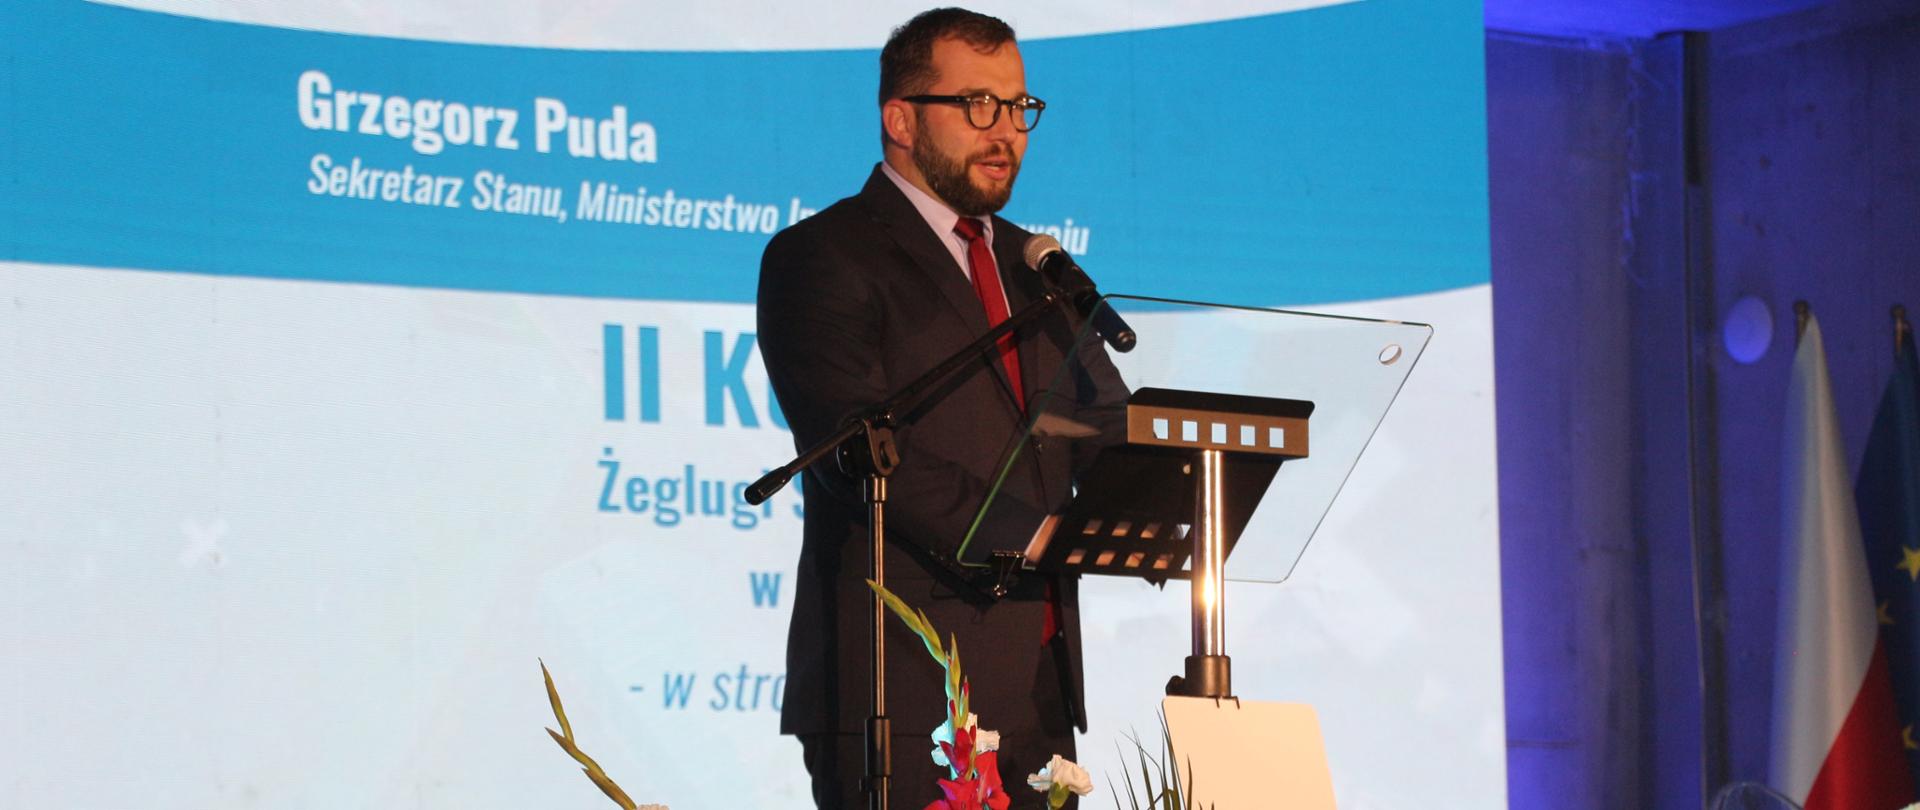 wiceminister Grzegorz Puda stoi przy pulpicie i mówi do mikrofonu, za nim napis II Kongres Żeglugi Śródlądowej